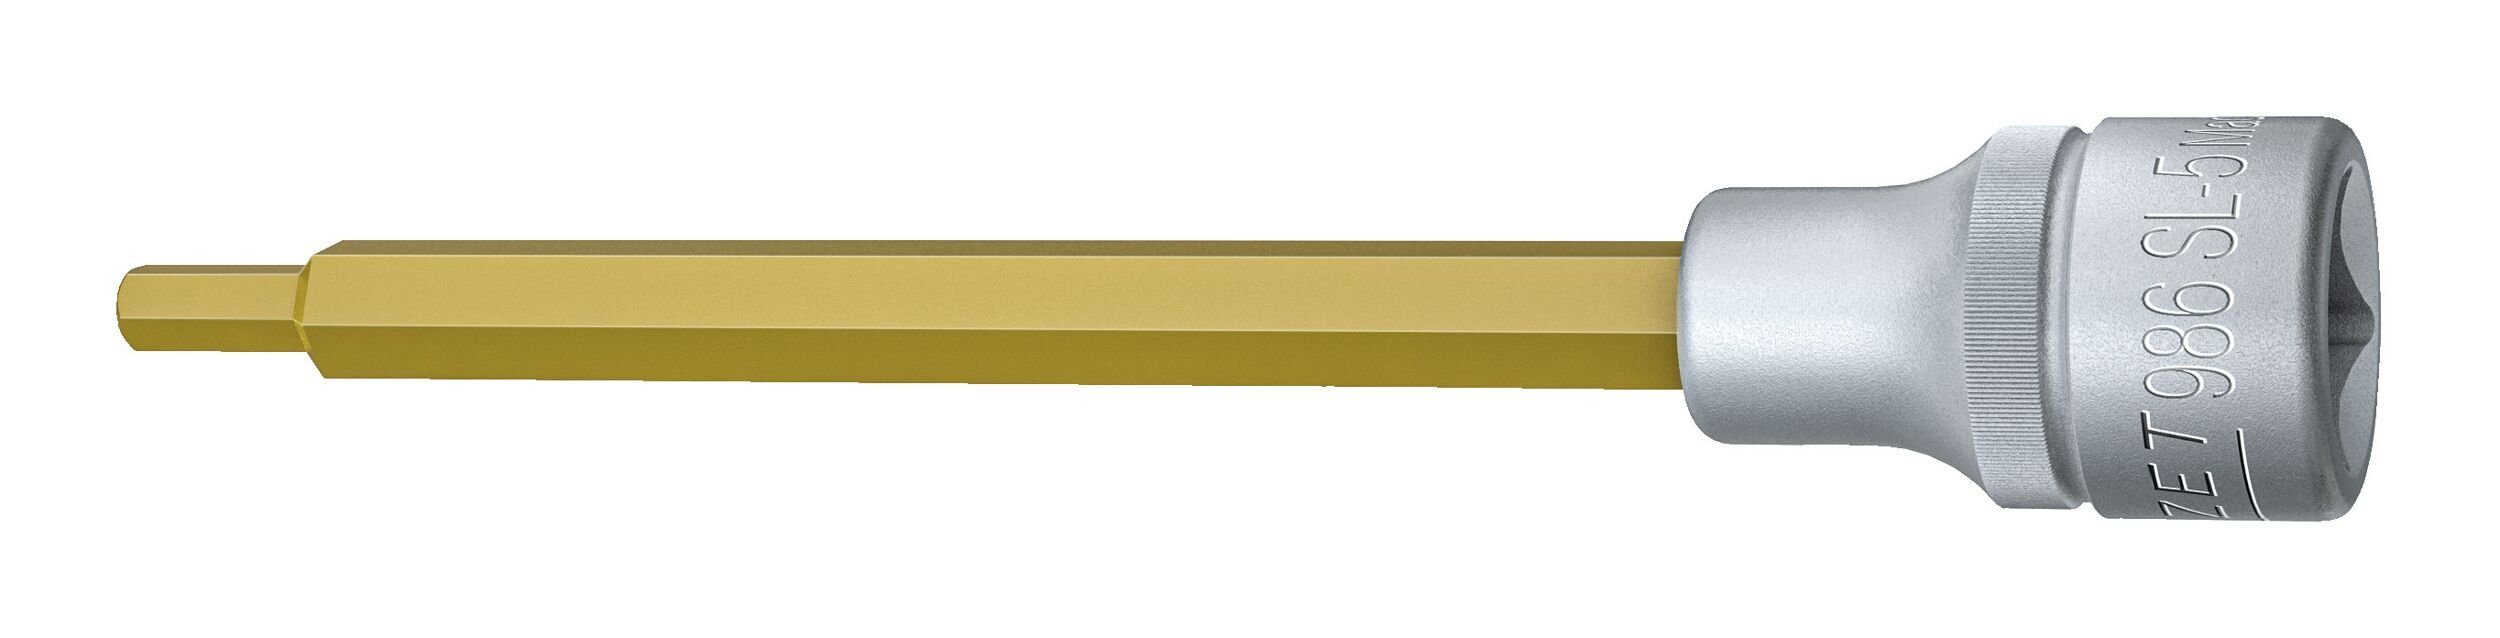 5 140 mm Innensechskant Steckschlüssel, 1/2" HAZET x Schraubendrehereinsatz